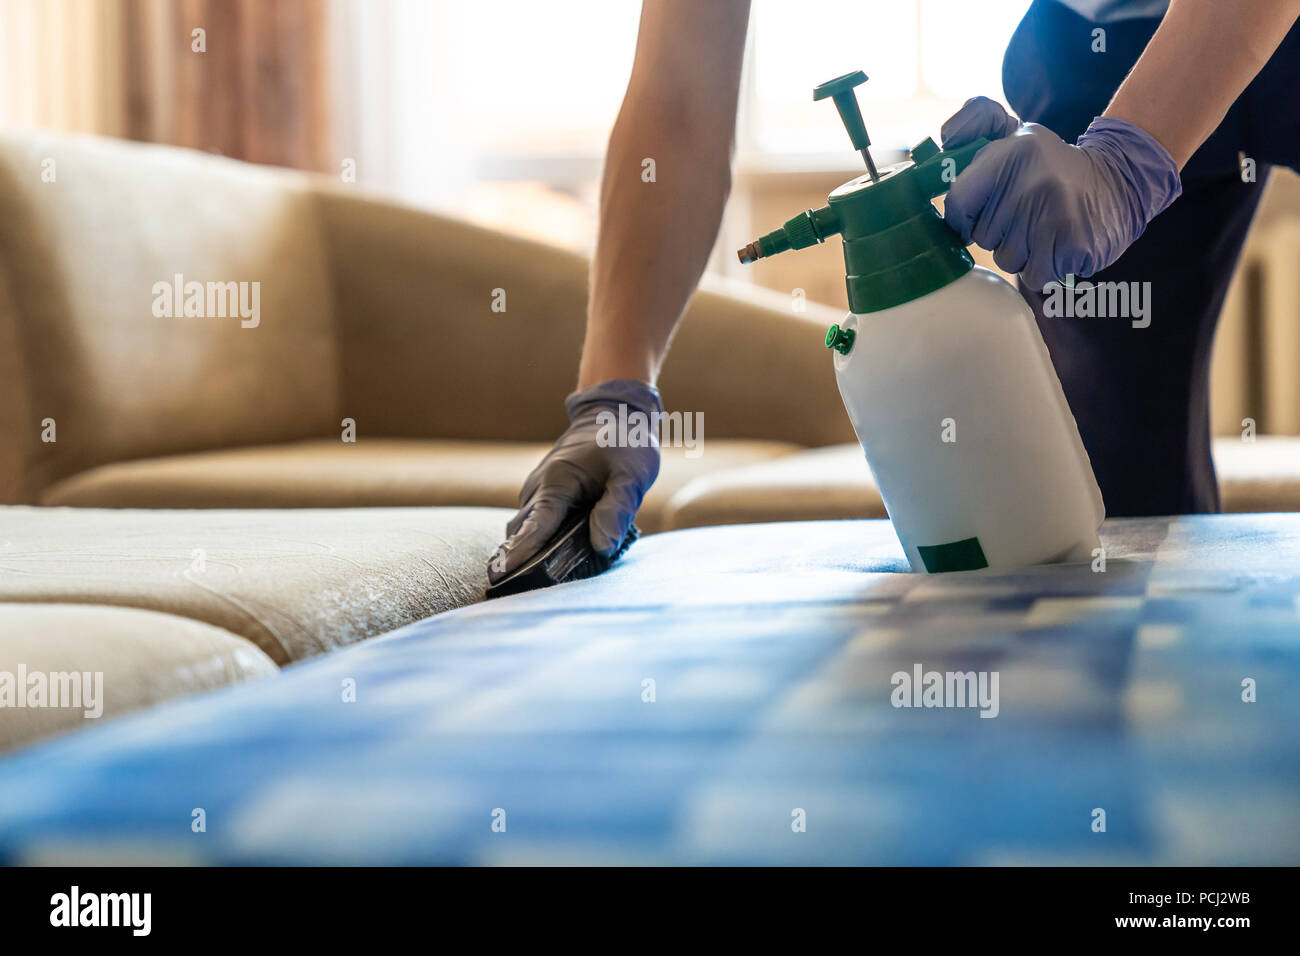 Acercamiento de sofás tapizados limpieza química Foto de stock